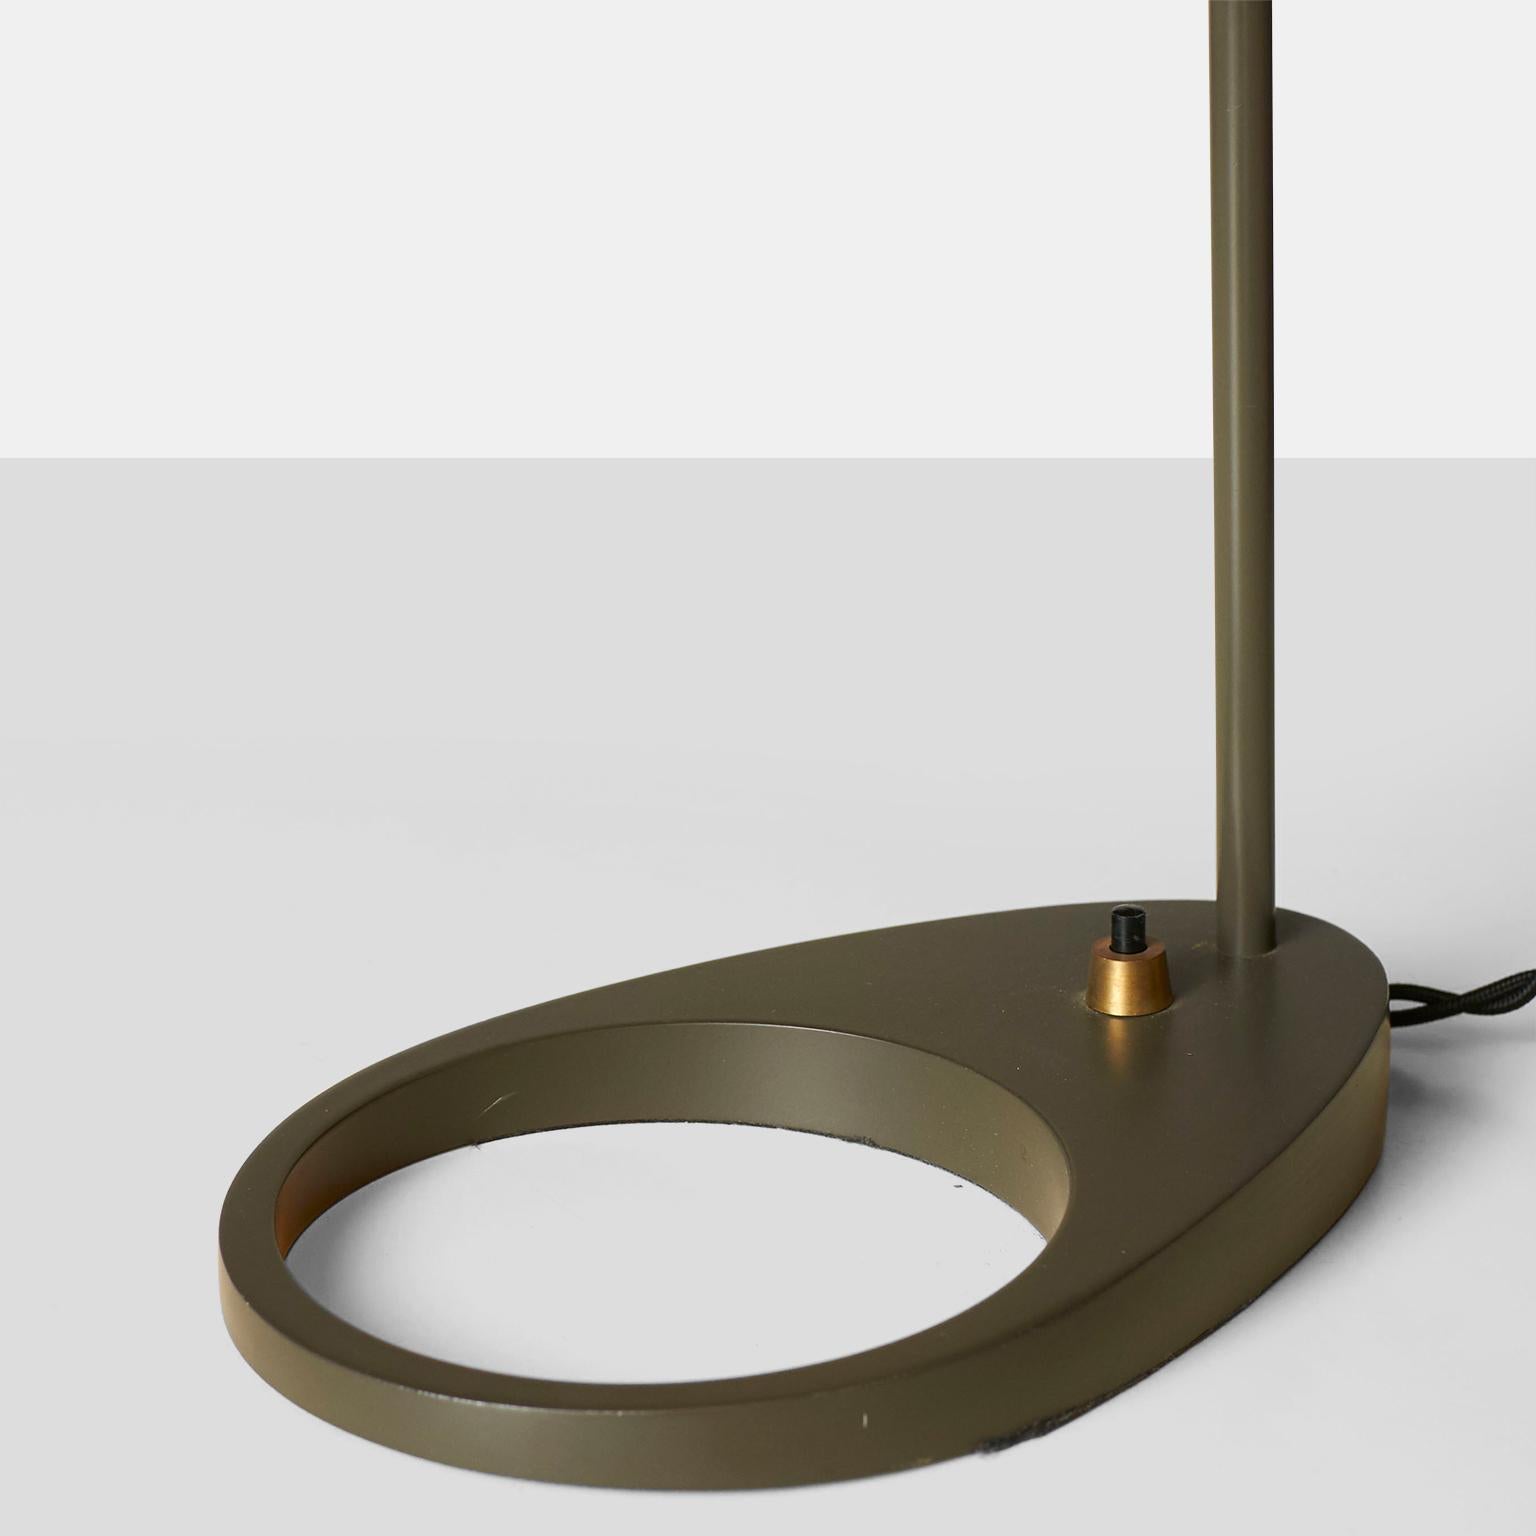 Danish Arne Jacobsen Desk Lamp For Sale